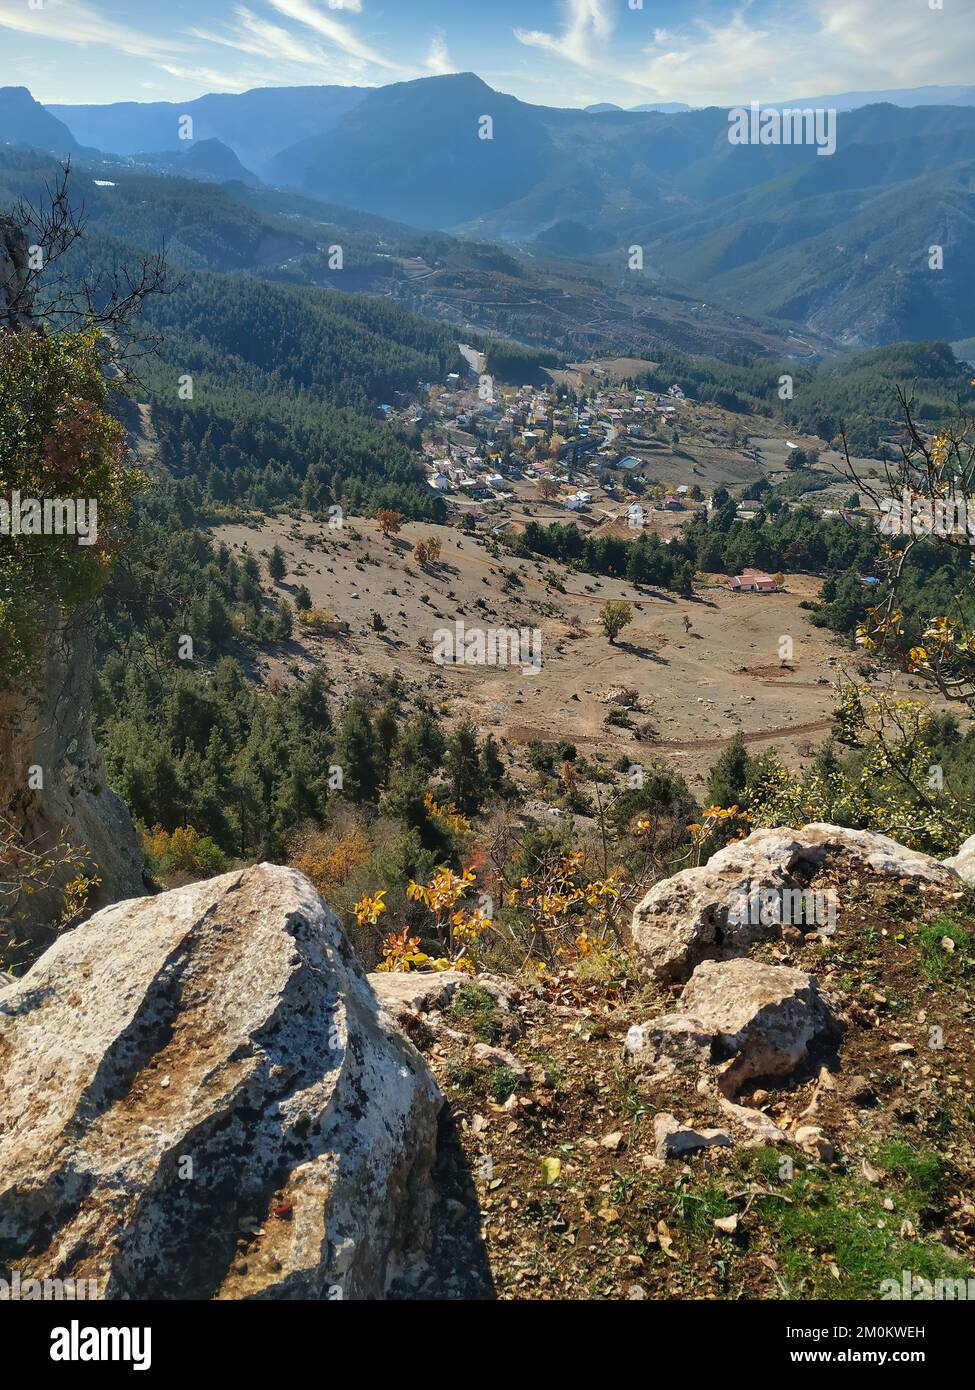 Vista de las mesetas de Mersin desde la cima de una colina alta, Turquía Foto de stock